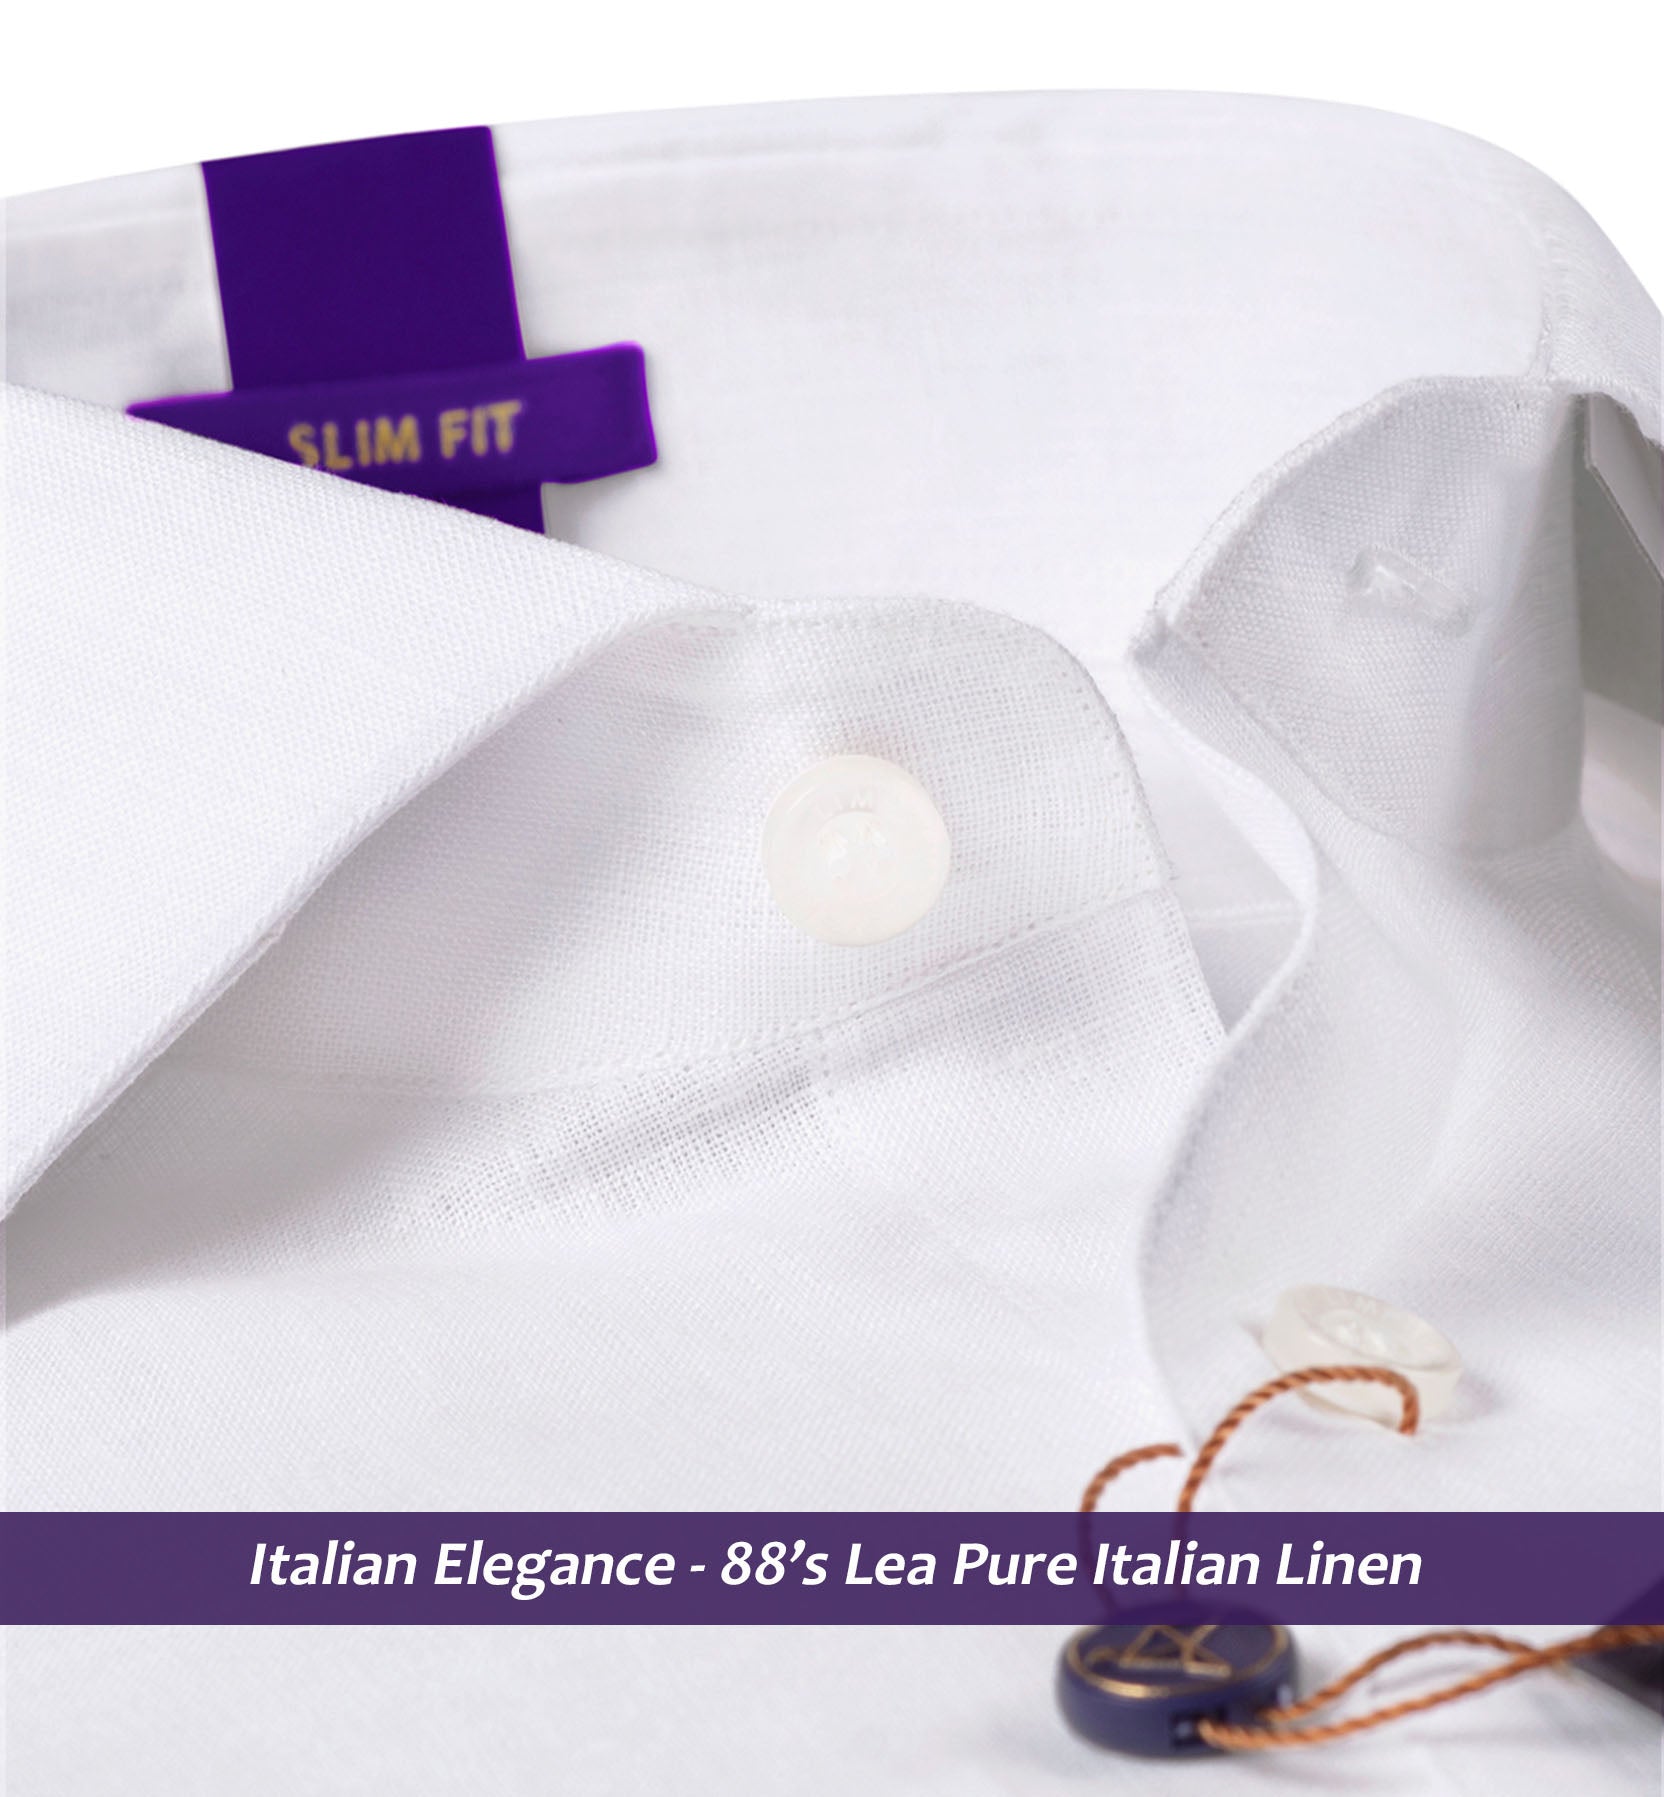 Vatican- Pristine Pure Solid White Linen- 88's Lea Pure Italian Linen